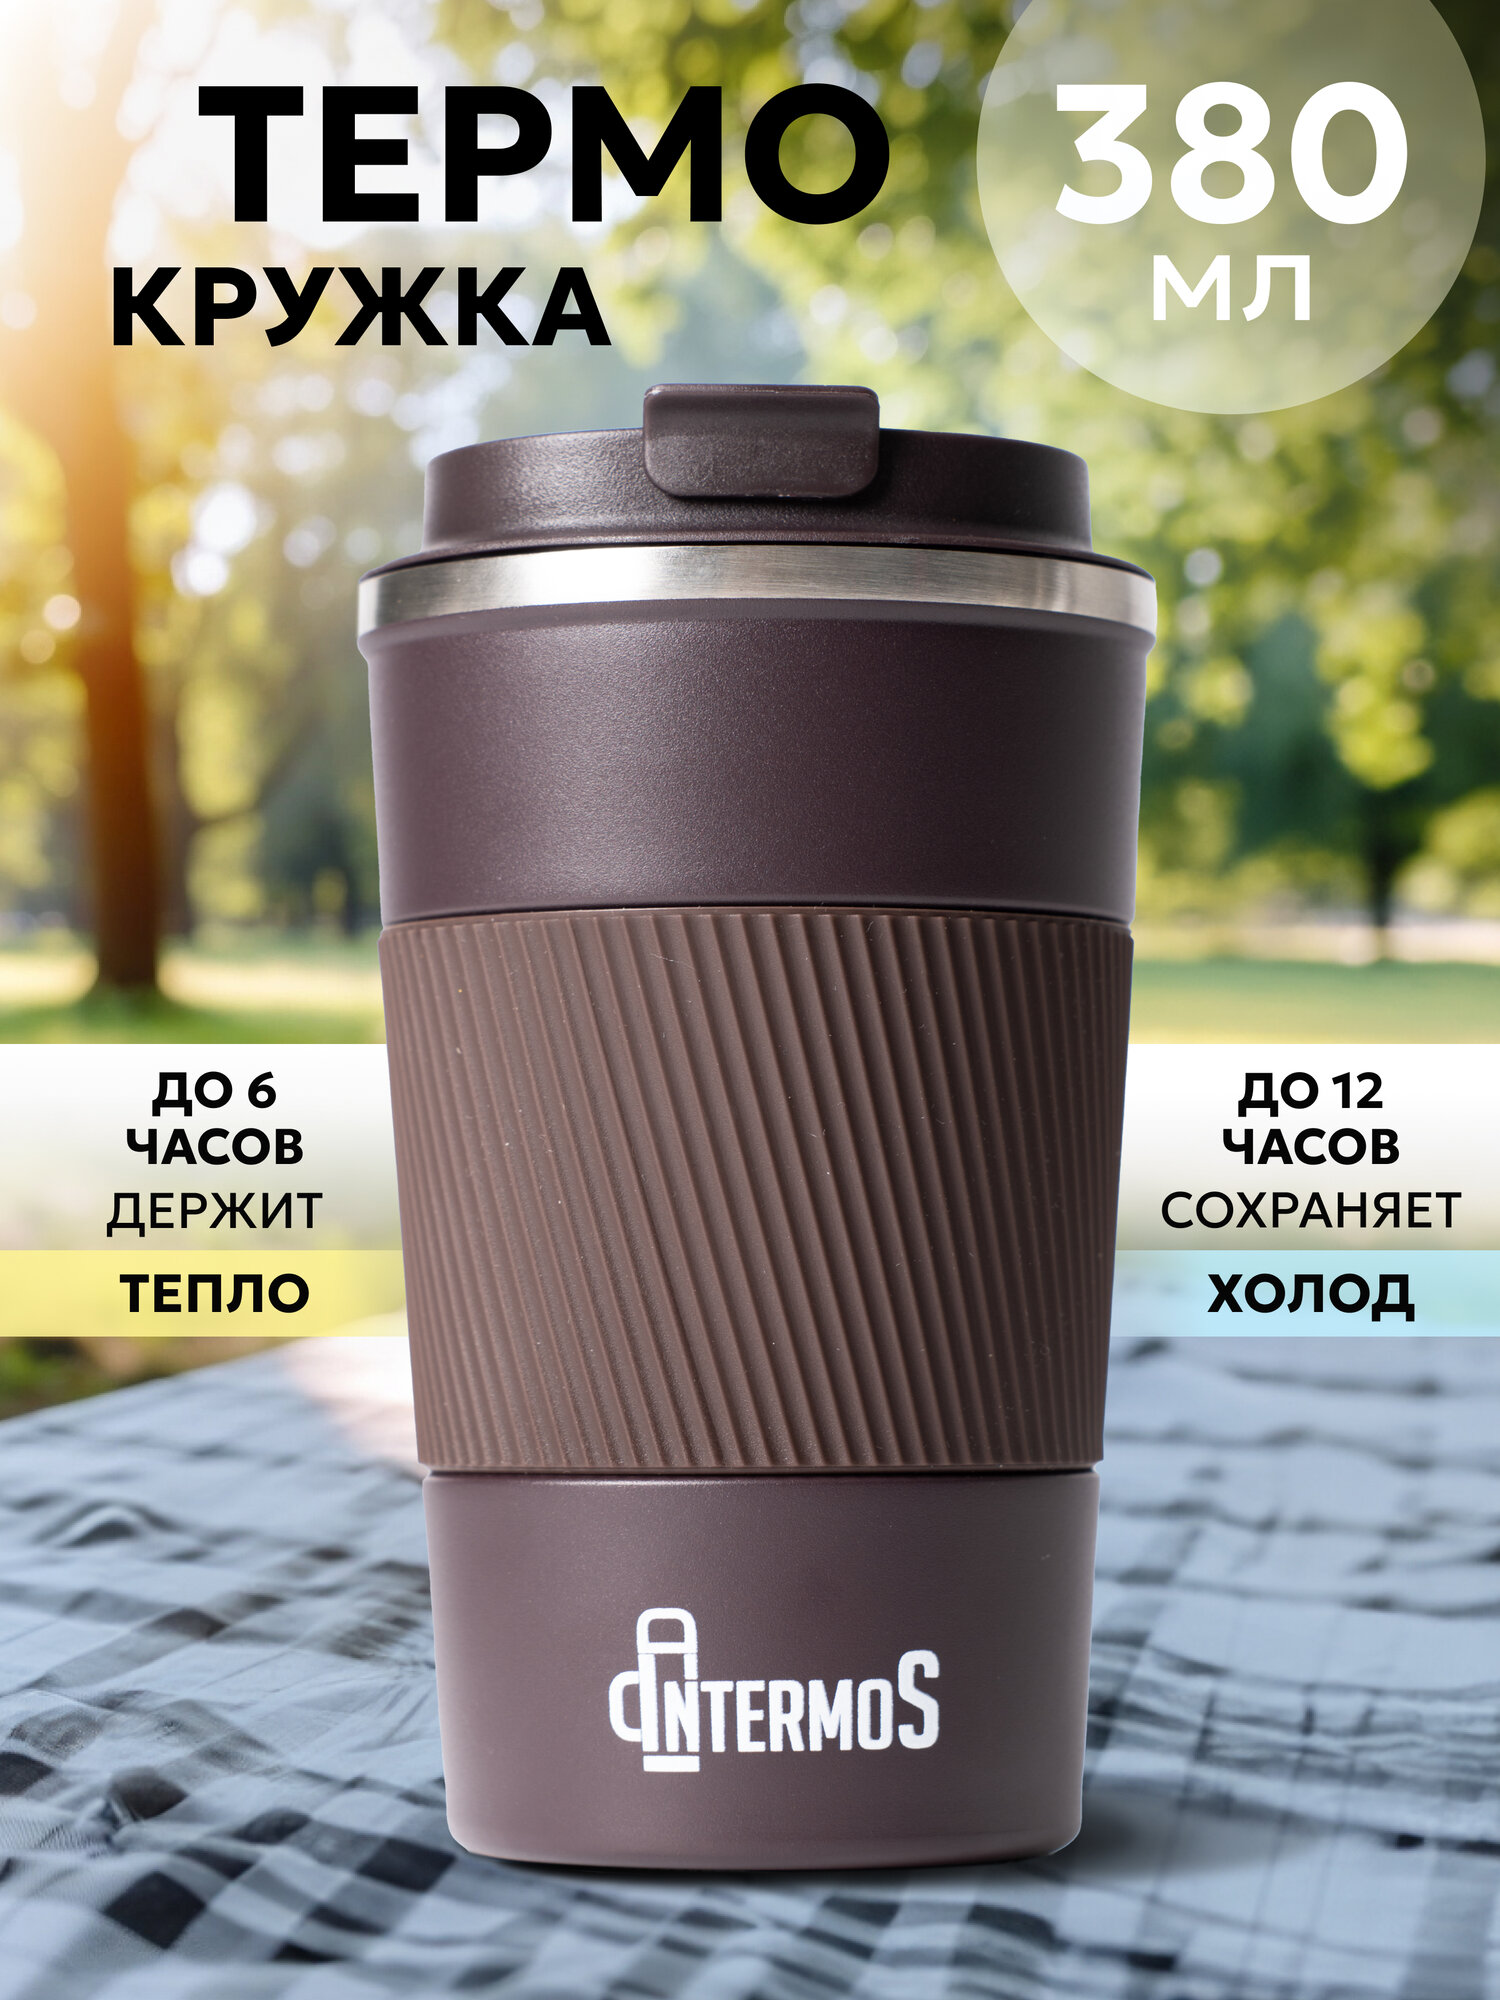 Термокружка Intermos для кофе и чая 380 мл., из нержавеющей стали, цвет коричневый - фотография № 1